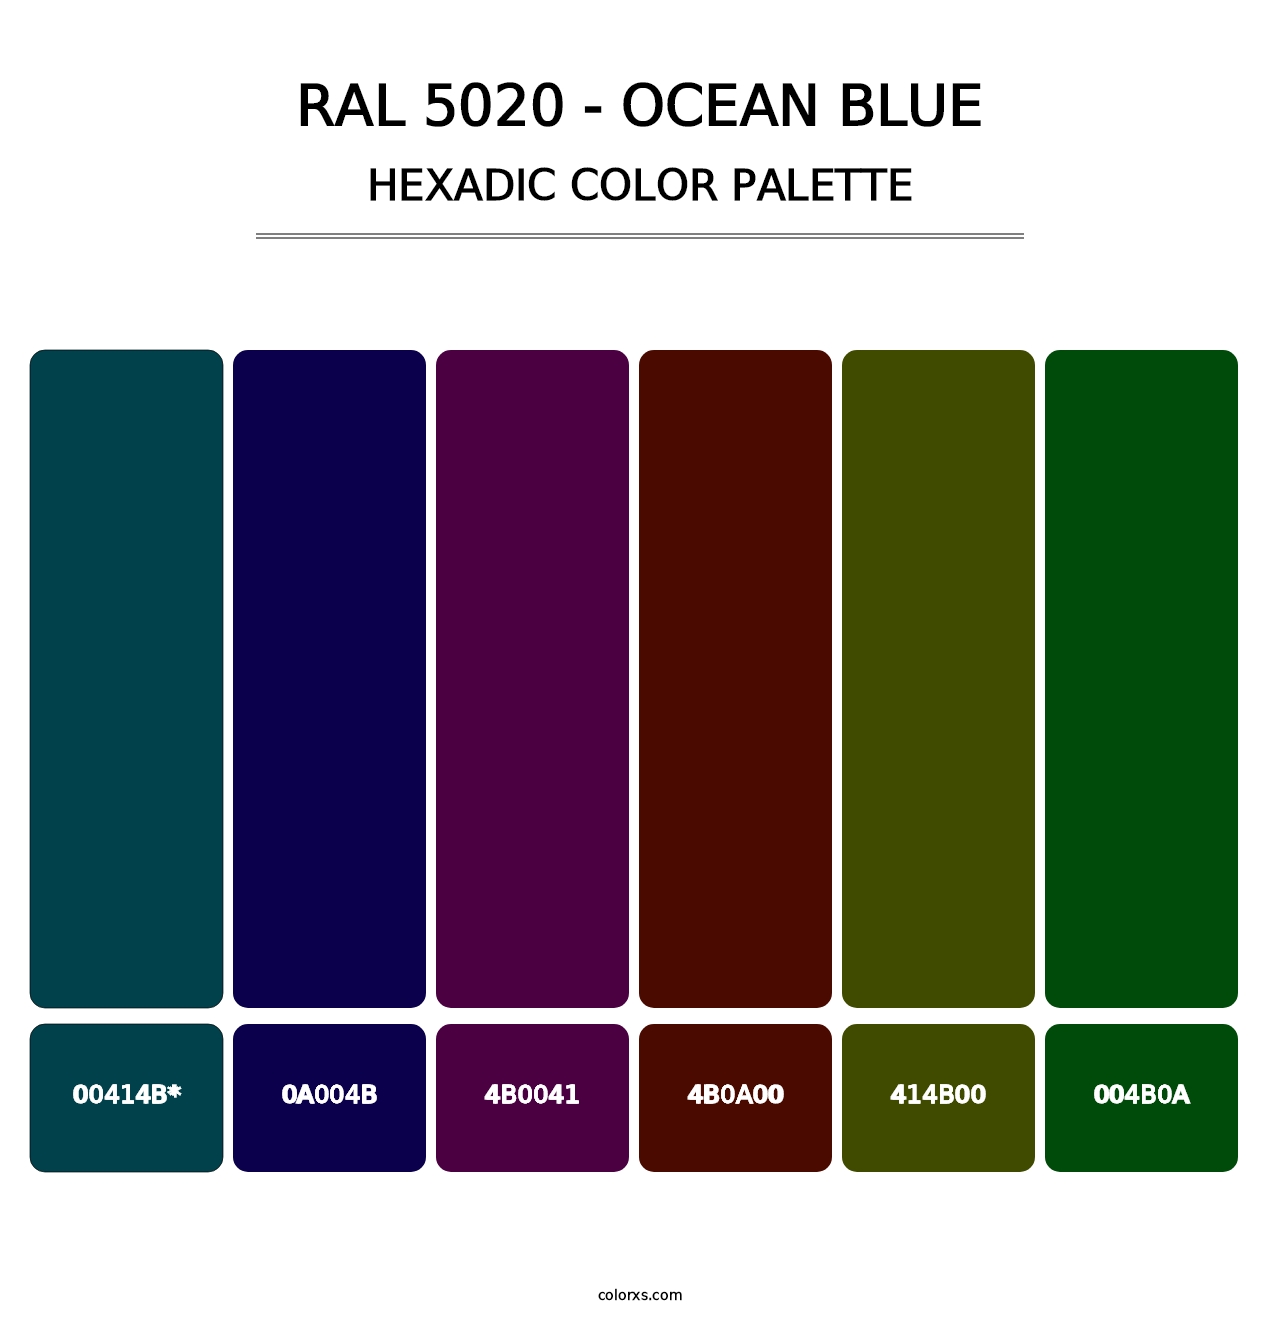 RAL 5020 - Ocean Blue - Hexadic Color Palette